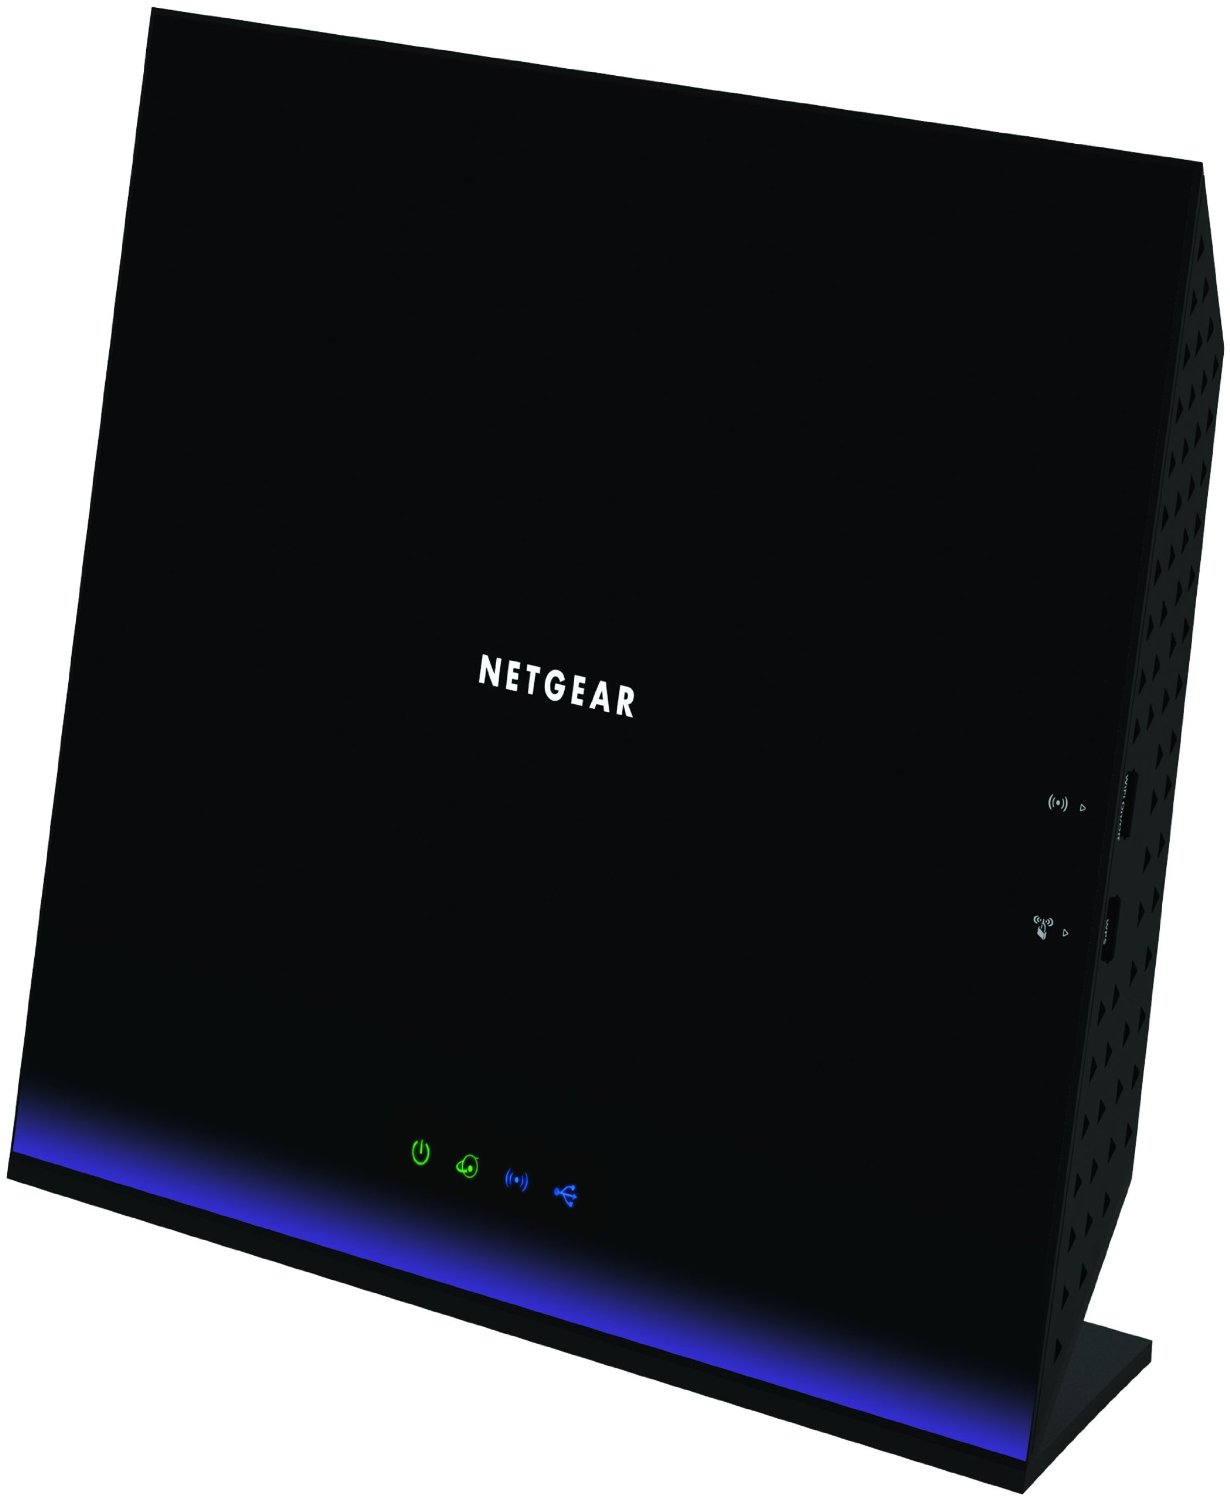 netgear router